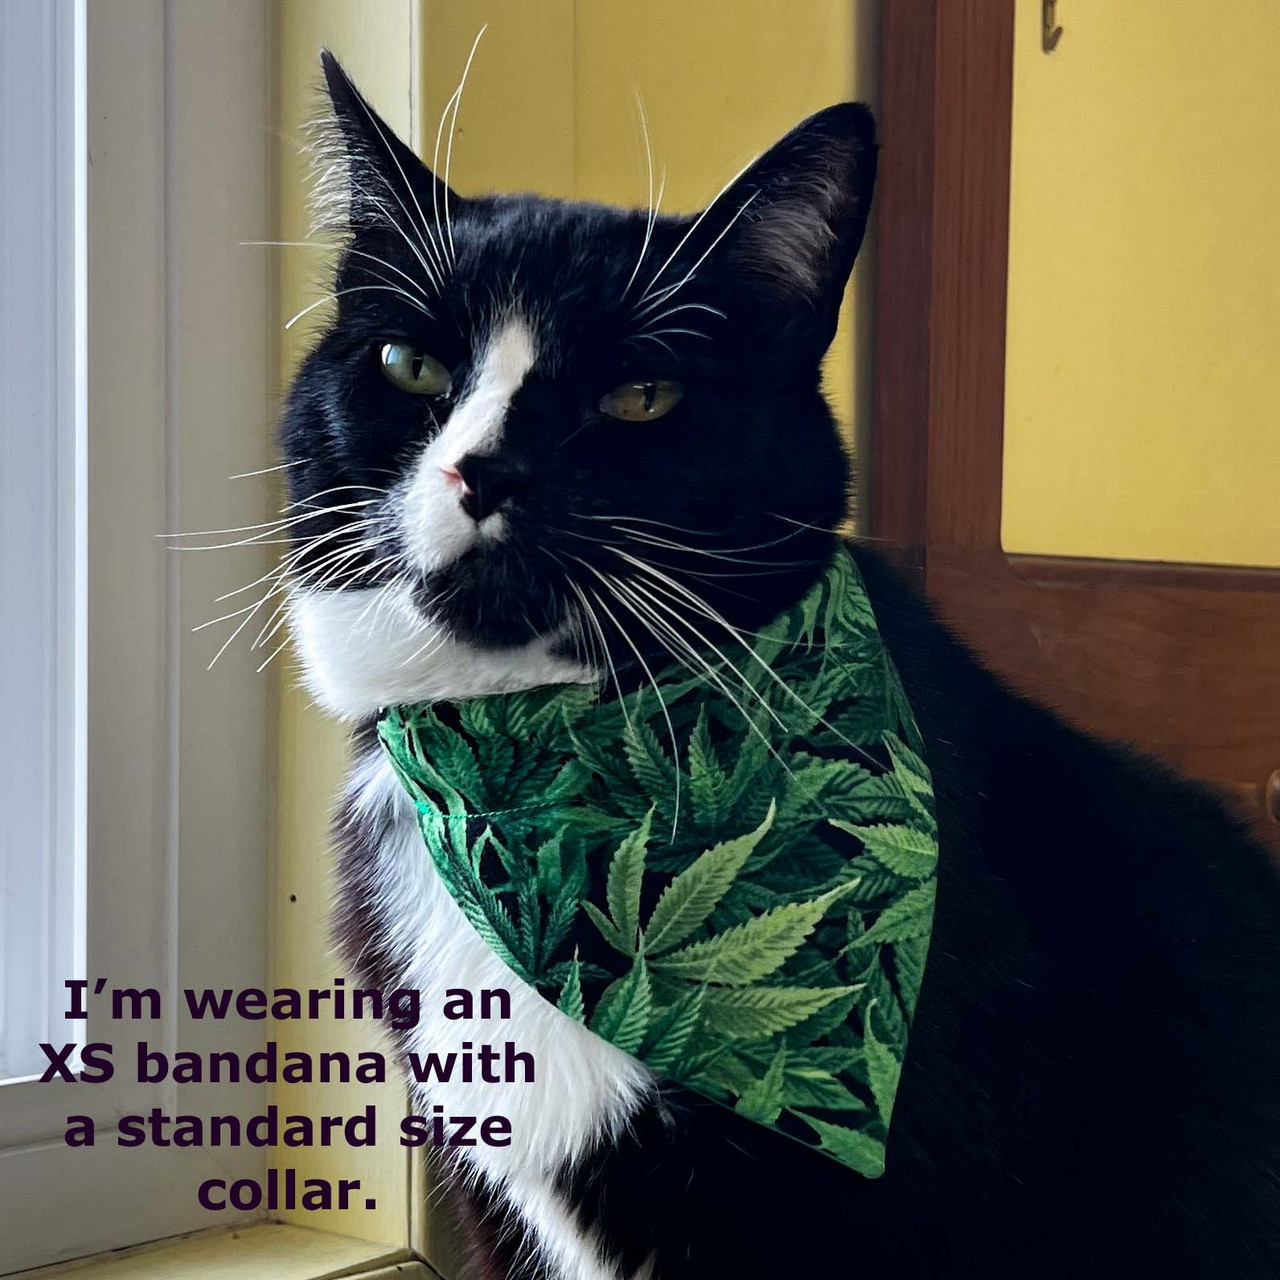 Cat wearing a pot leaf bandana